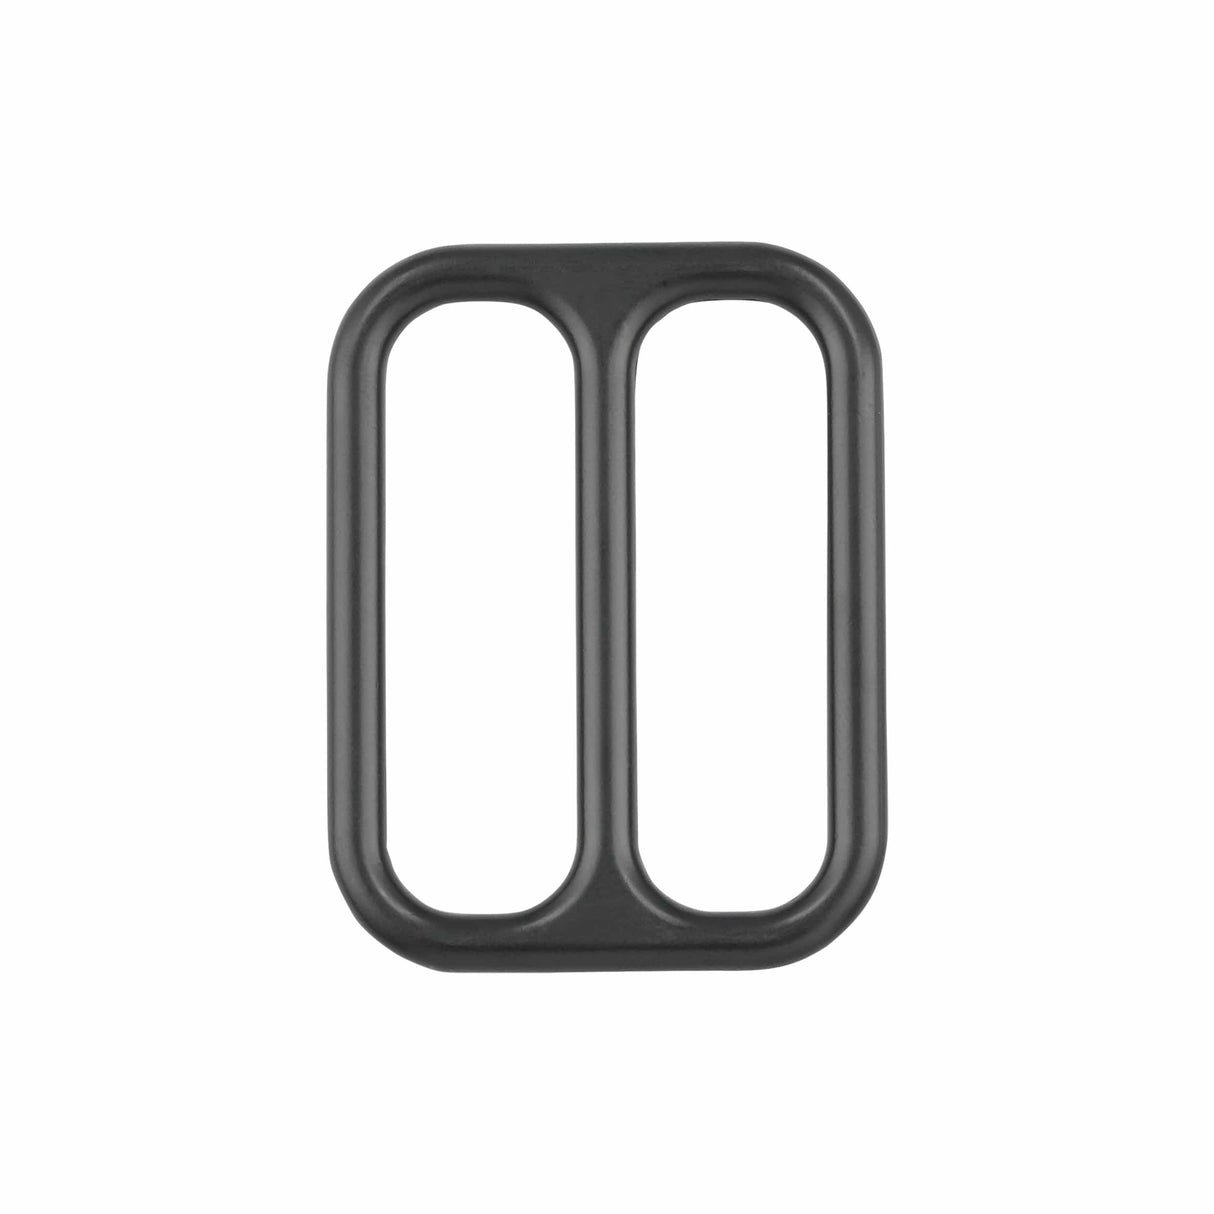 Ohio Travel Bag Rings & Slides 2" Black, Double Loop, Zinc Alloy, #P-2560-BLK P-2560-BLK